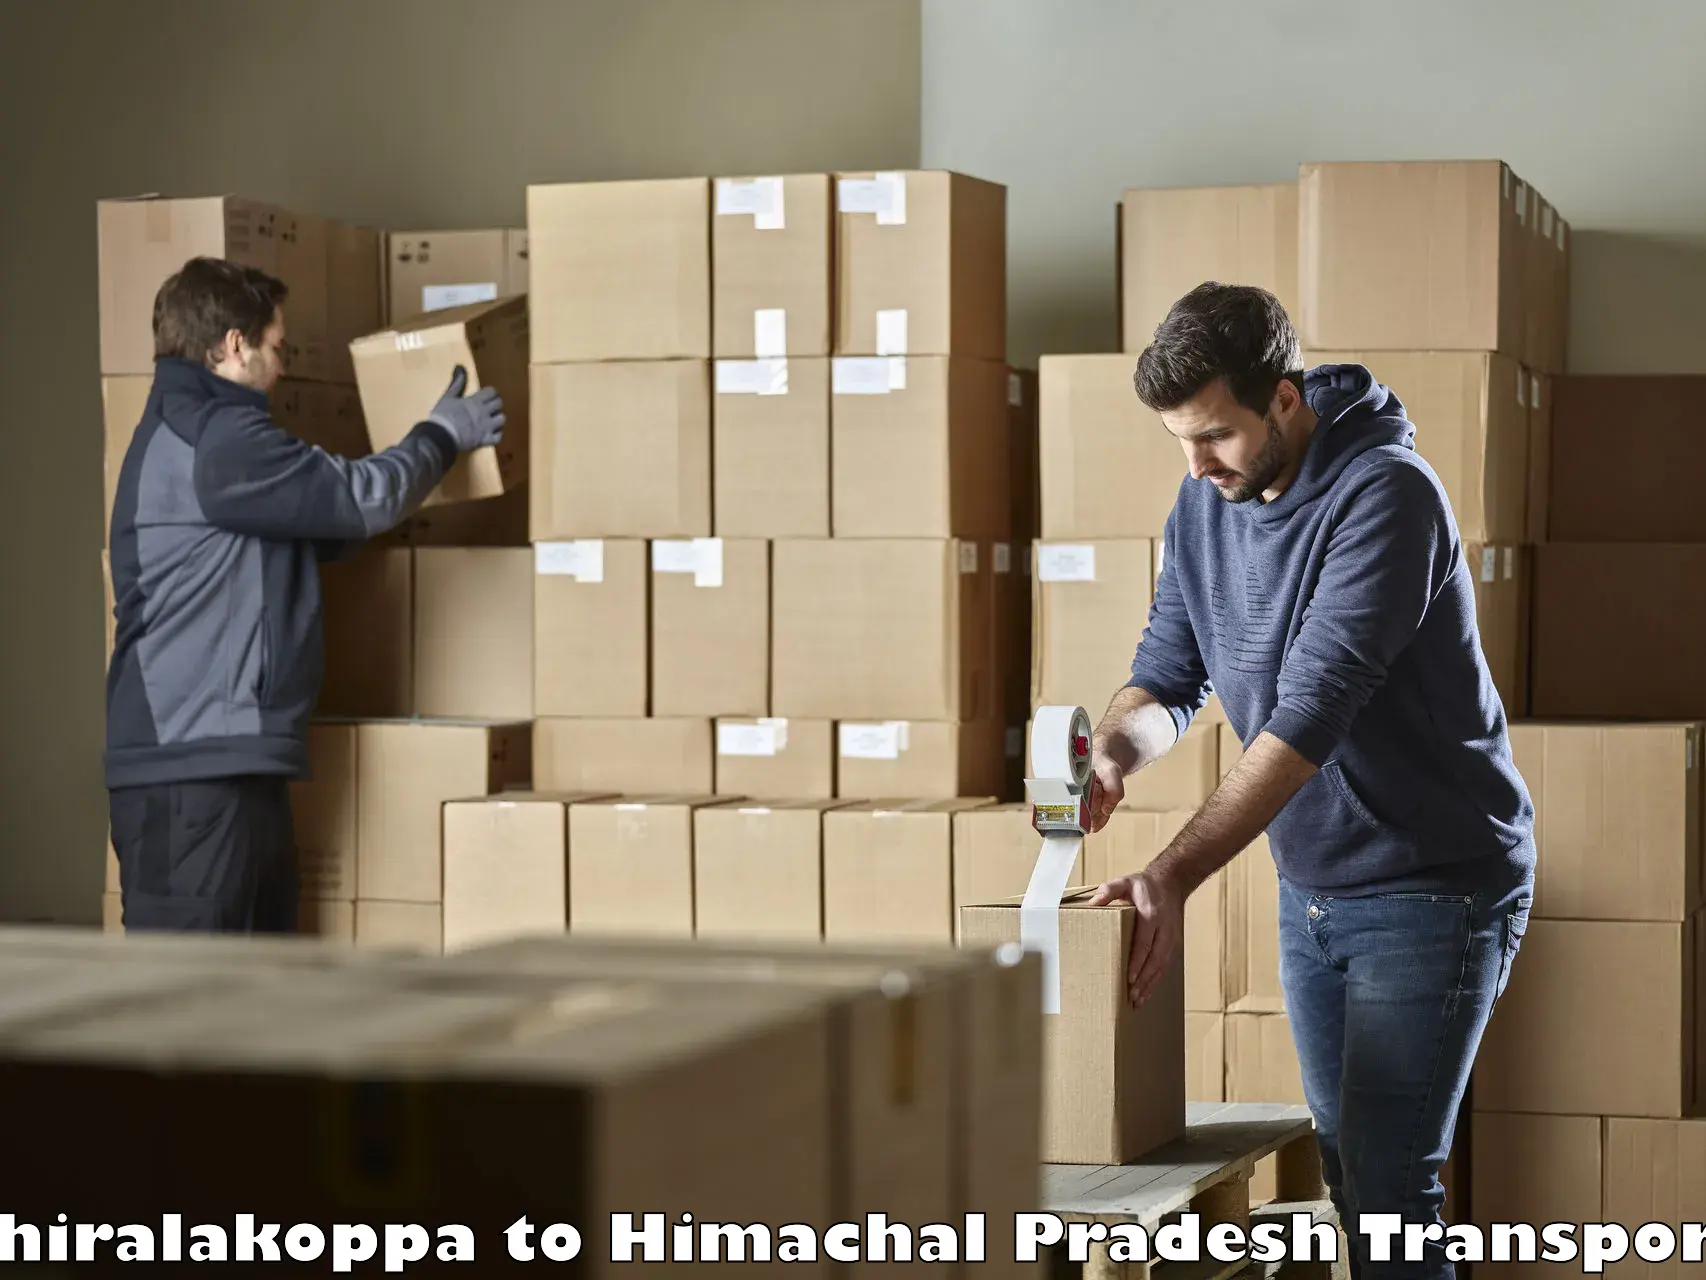 Furniture transport service Shiralakoppa to Chamba